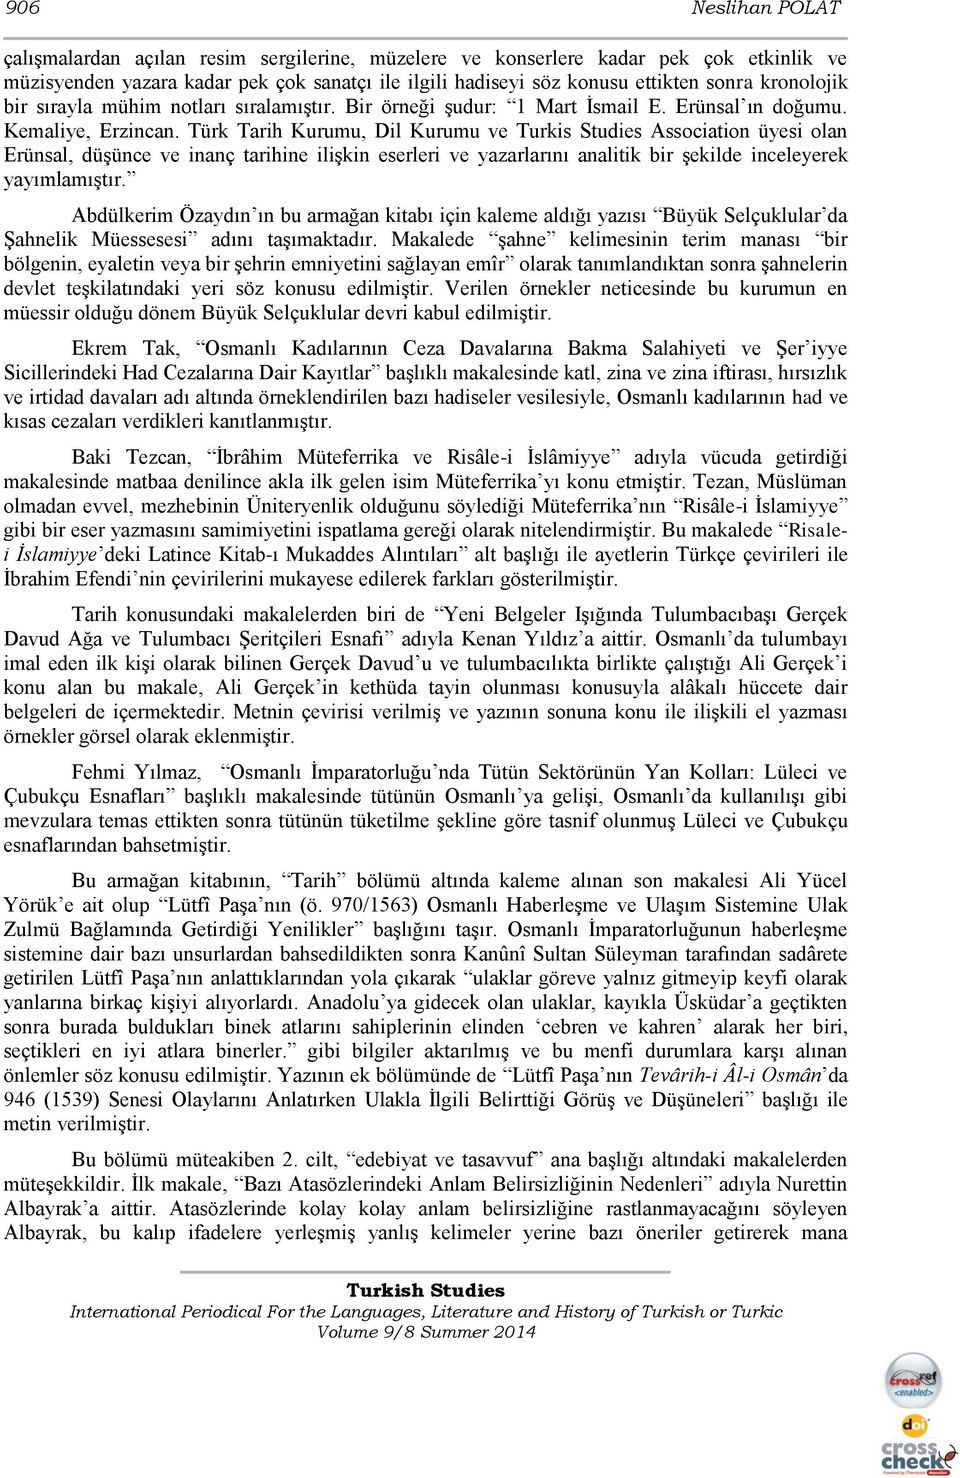 Türk Tarih Kurumu, Dil Kurumu ve Turkis Studies Association üyesi olan Erünsal, düşünce ve inanç tarihine ilişkin eserleri ve yazarlarını analitik bir şekilde inceleyerek yayımlamıştır.